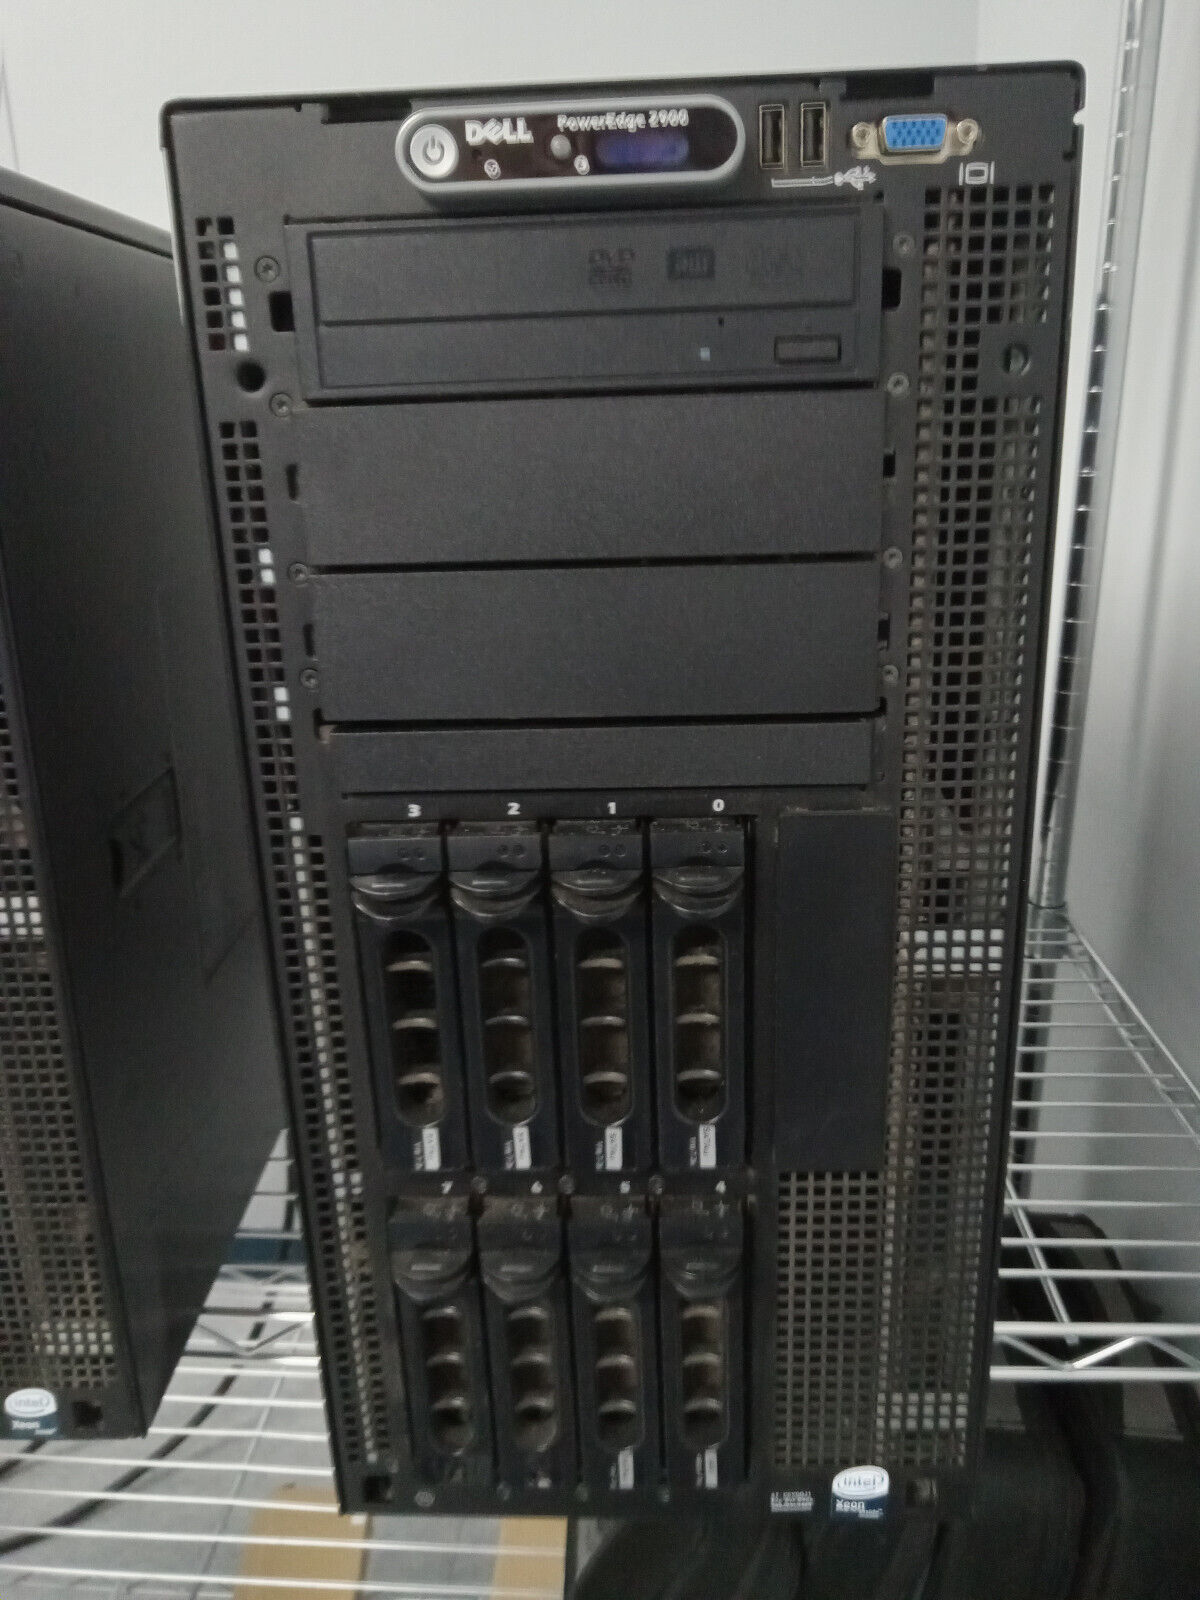 Dell Poweredge 2900 server